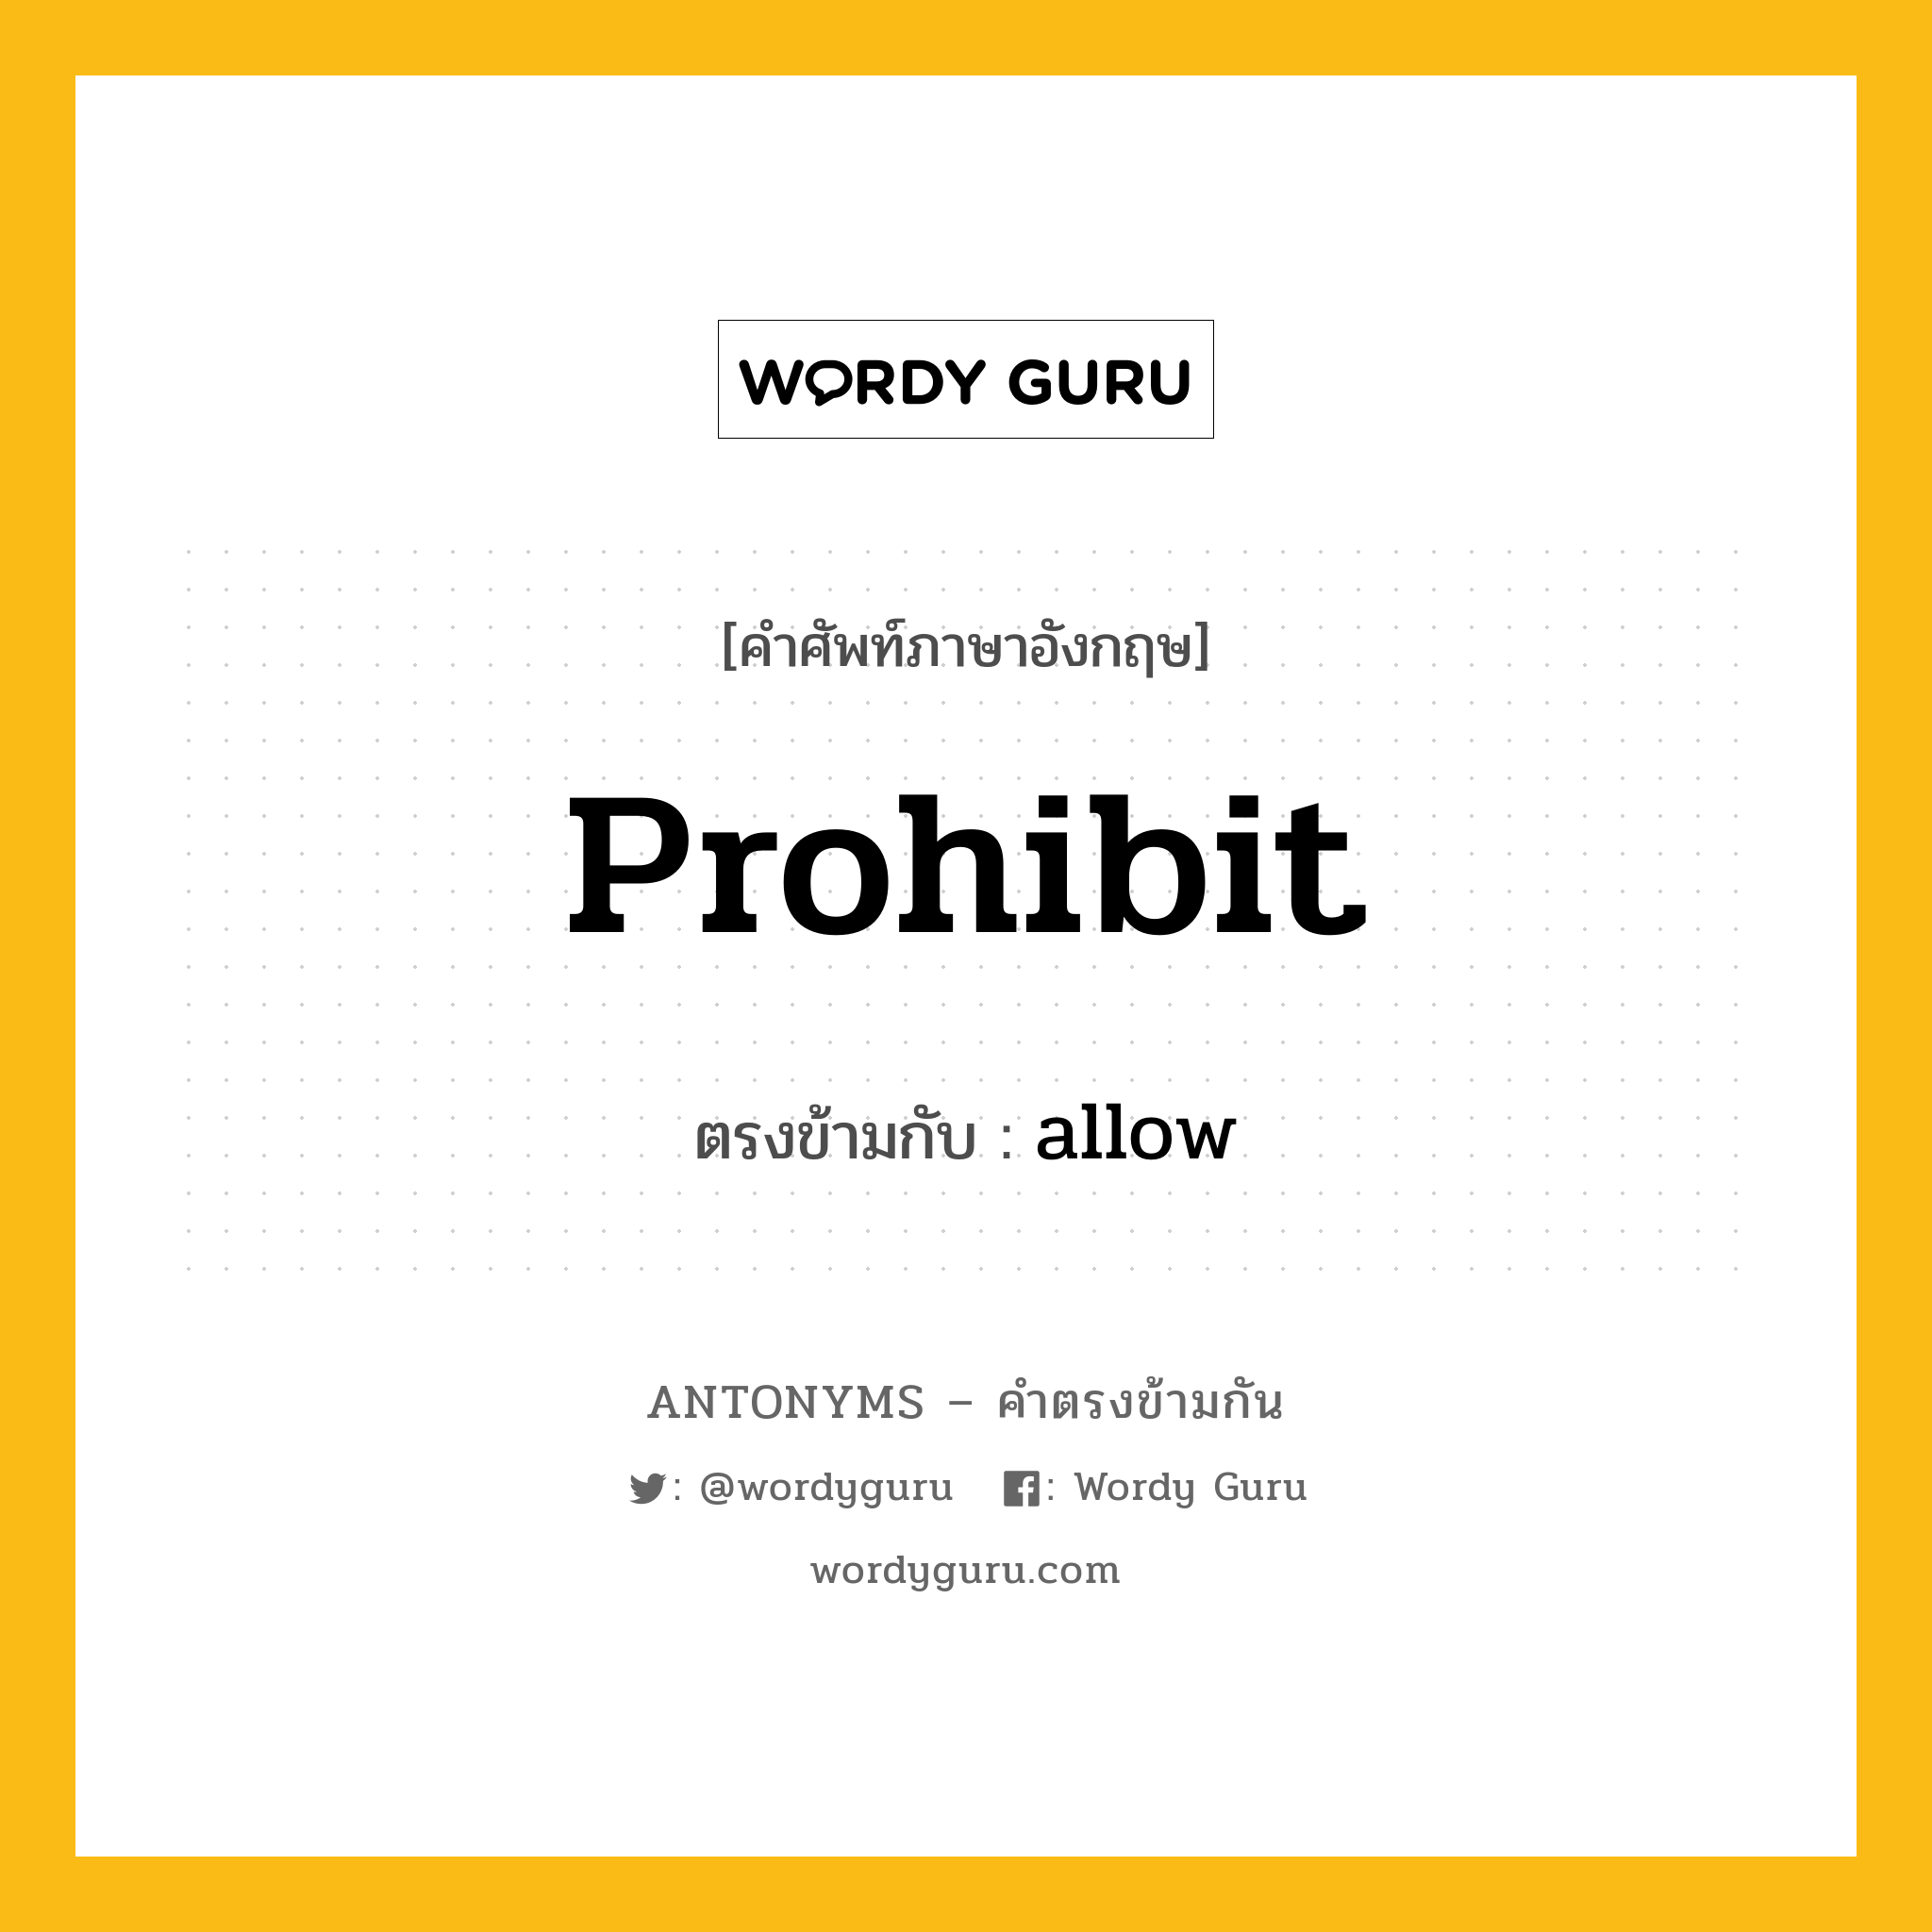 prohibit เป็นคำตรงข้ามกับคำไหนบ้าง?, คำศัพท์ภาษาอังกฤษ prohibit ตรงข้ามกับ allow หมวด allow